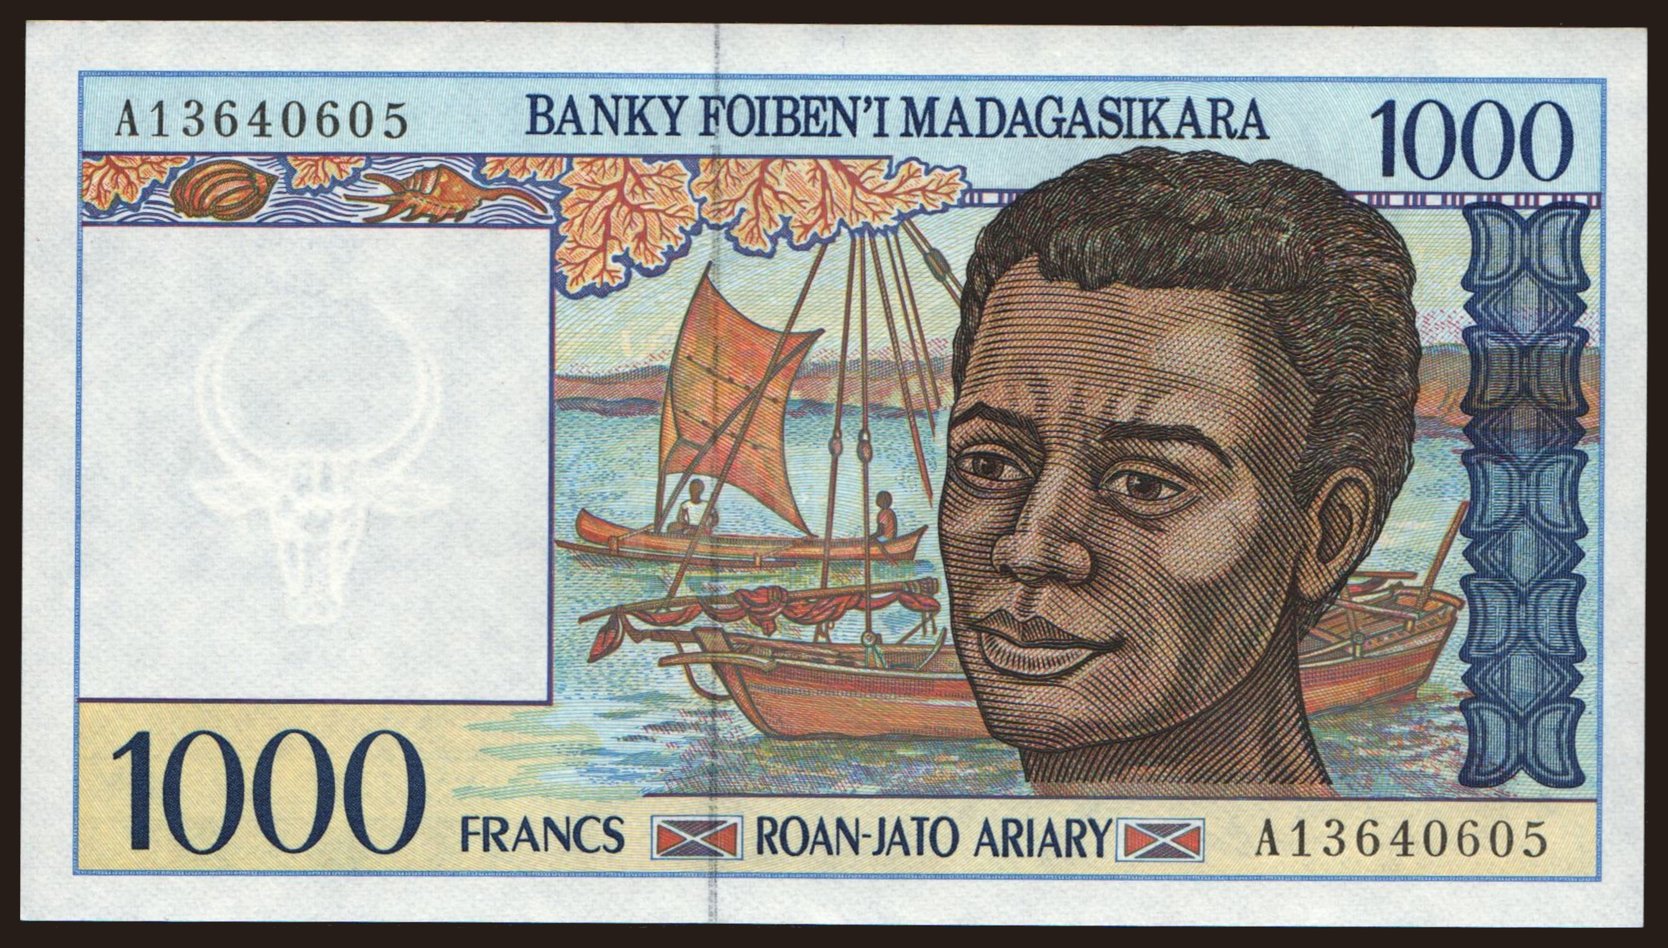 1000 francs, 1994